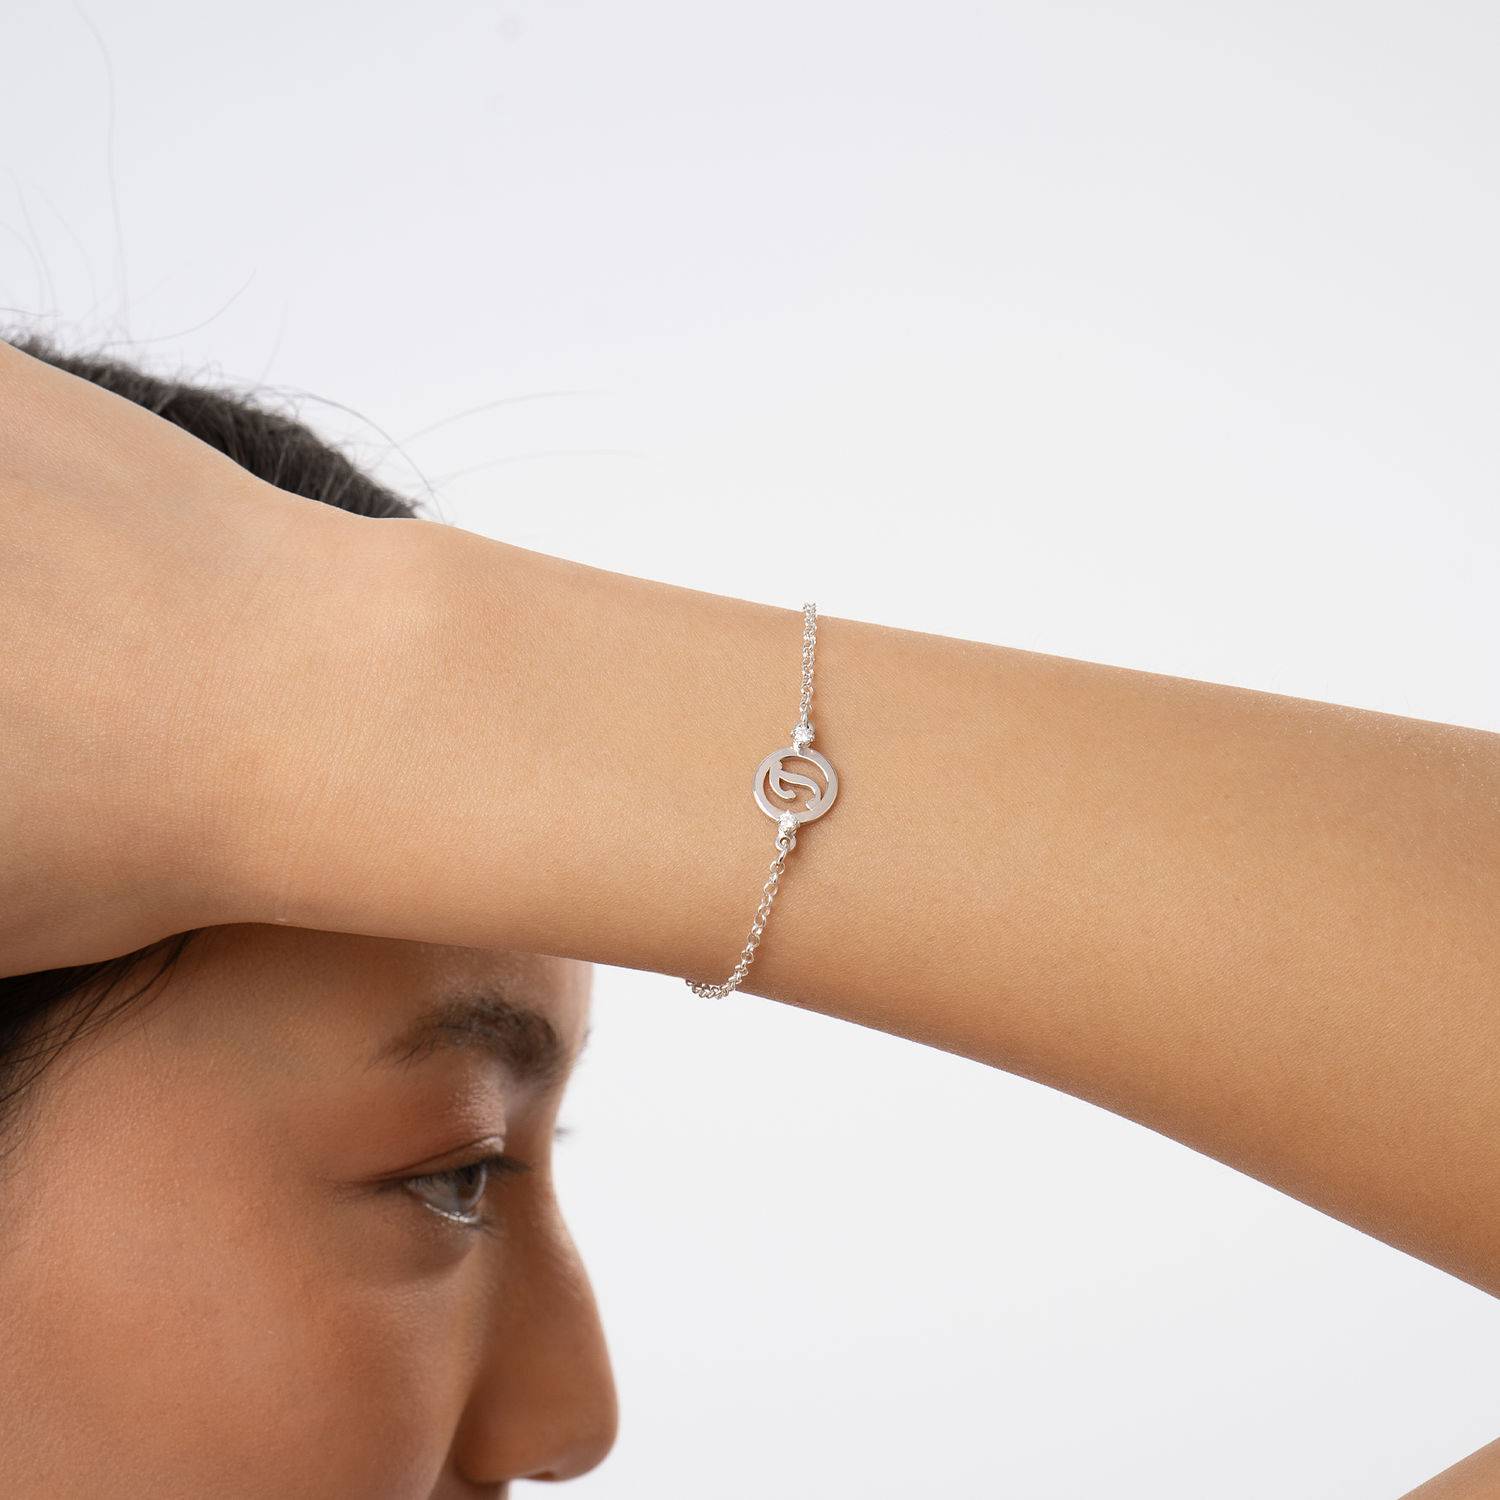 Halo armband met initialen en zirkonia in sterling zilver-5 Productfoto